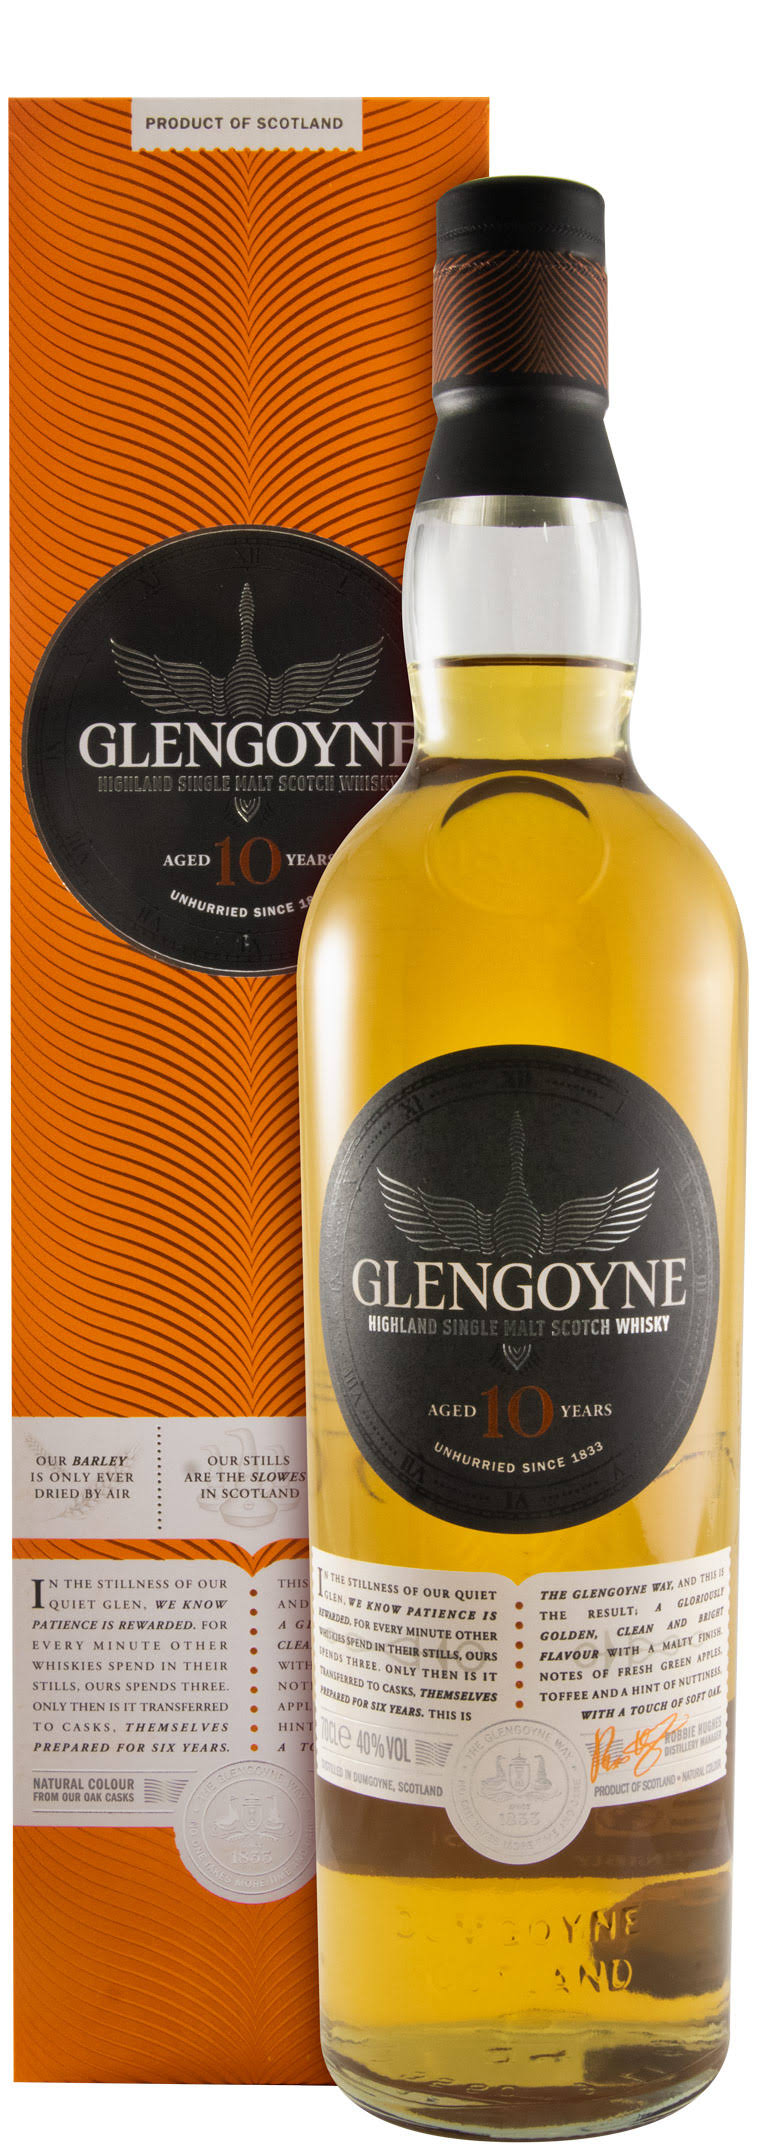 Glengoyne Highland Single Malt Scotch Whisky - 700ml